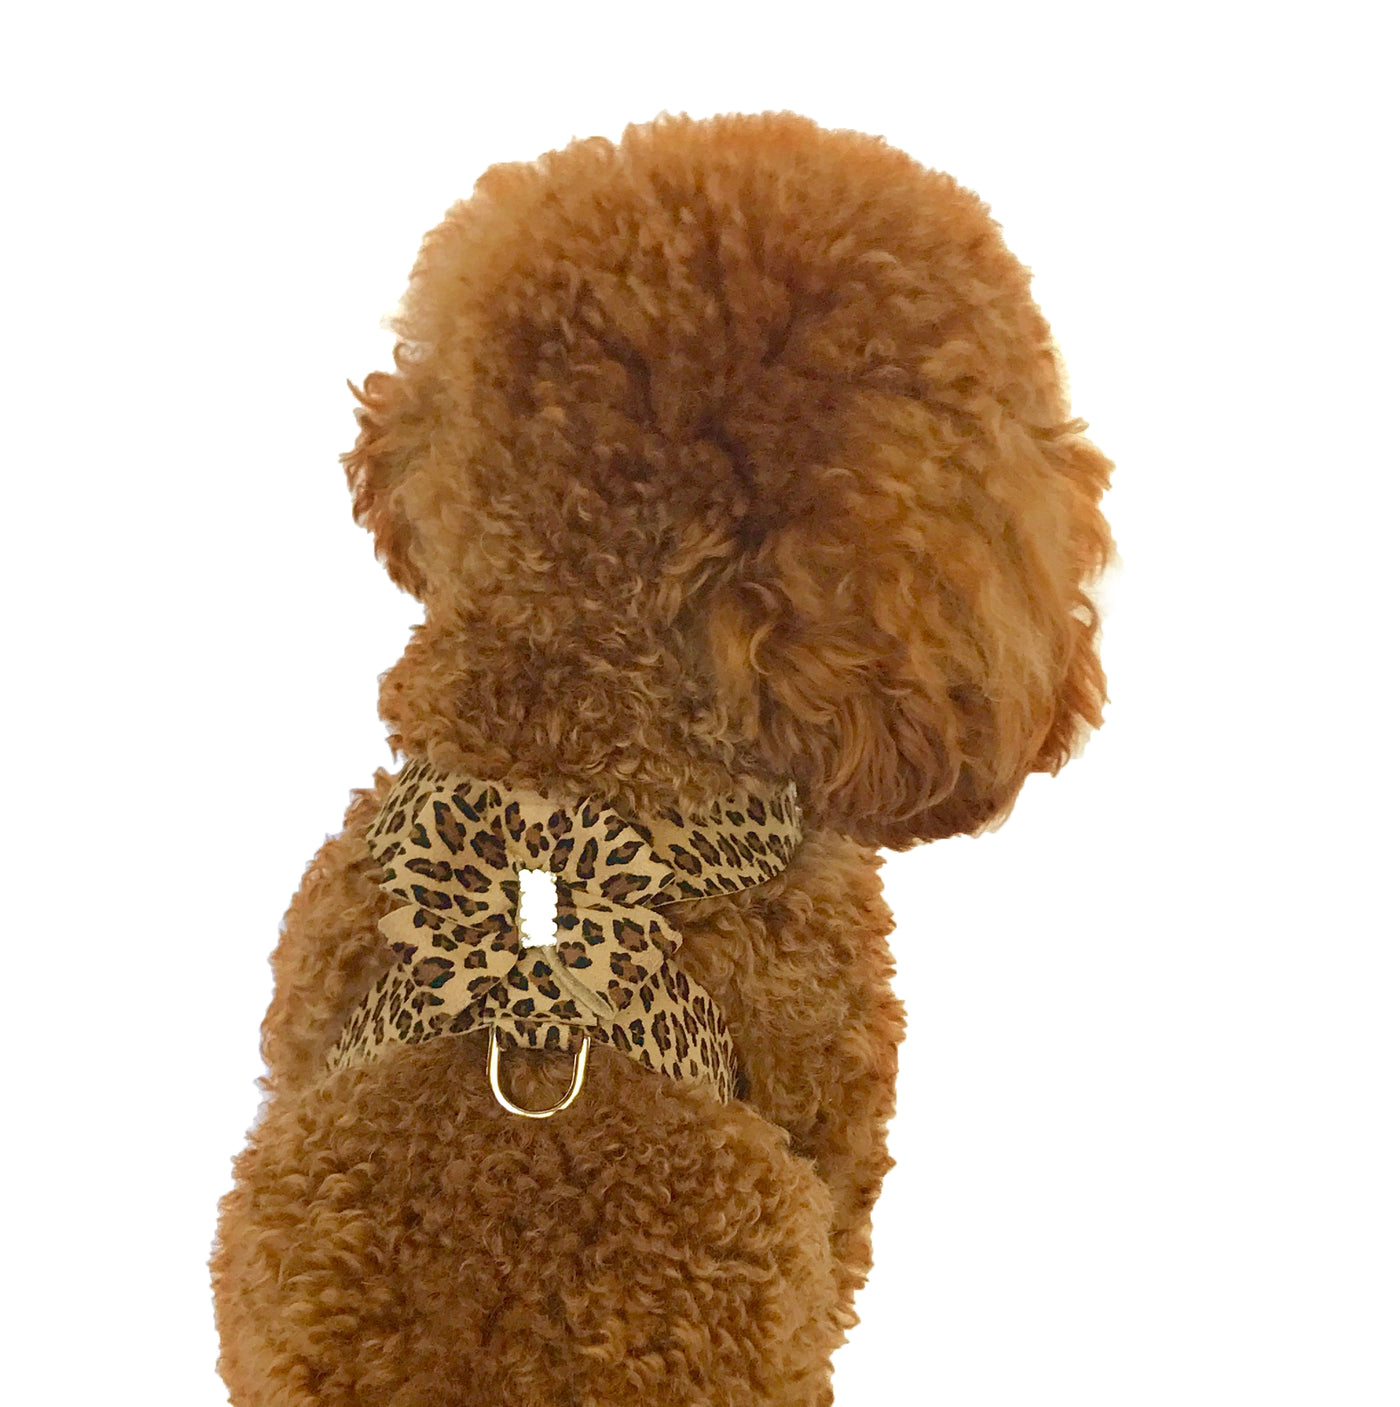 Hollywood Bow Dog Harness, Cheetah